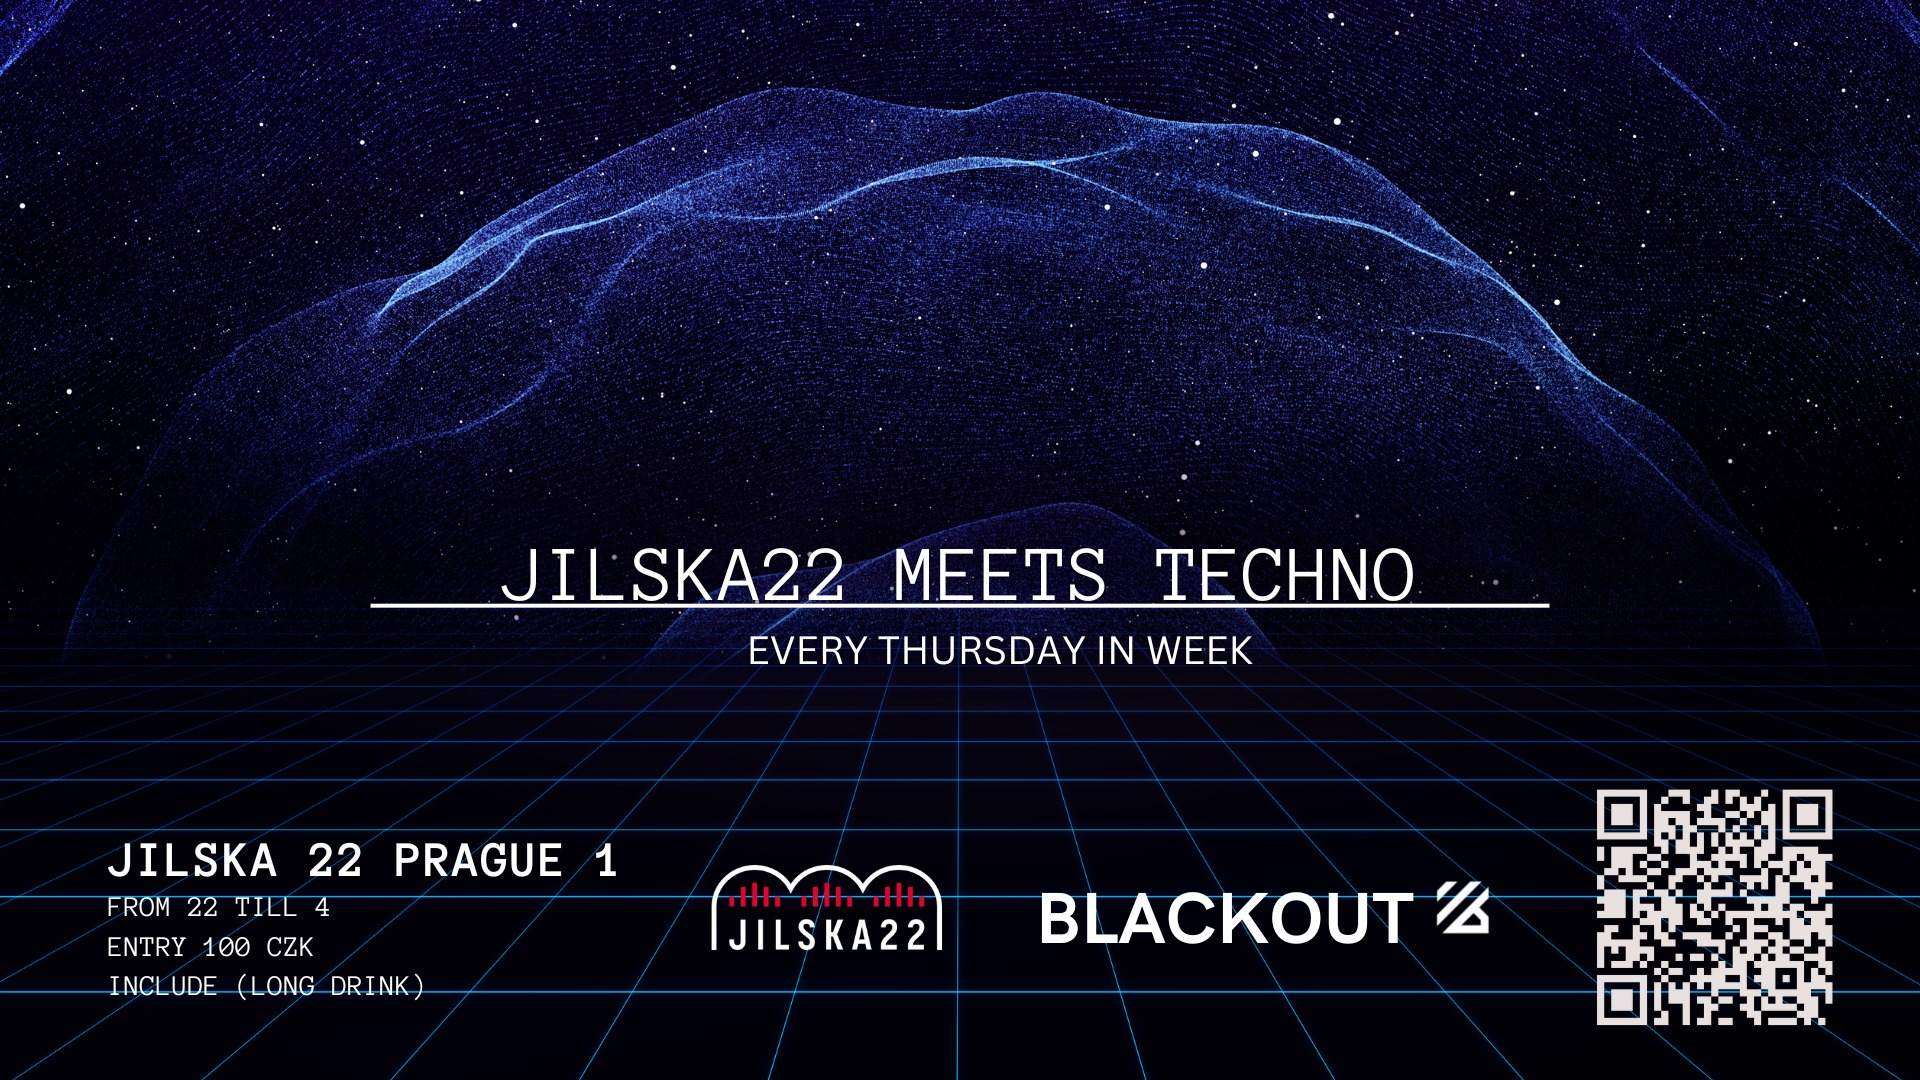 Jilska22 meets Techno by Blackout - Página frontal